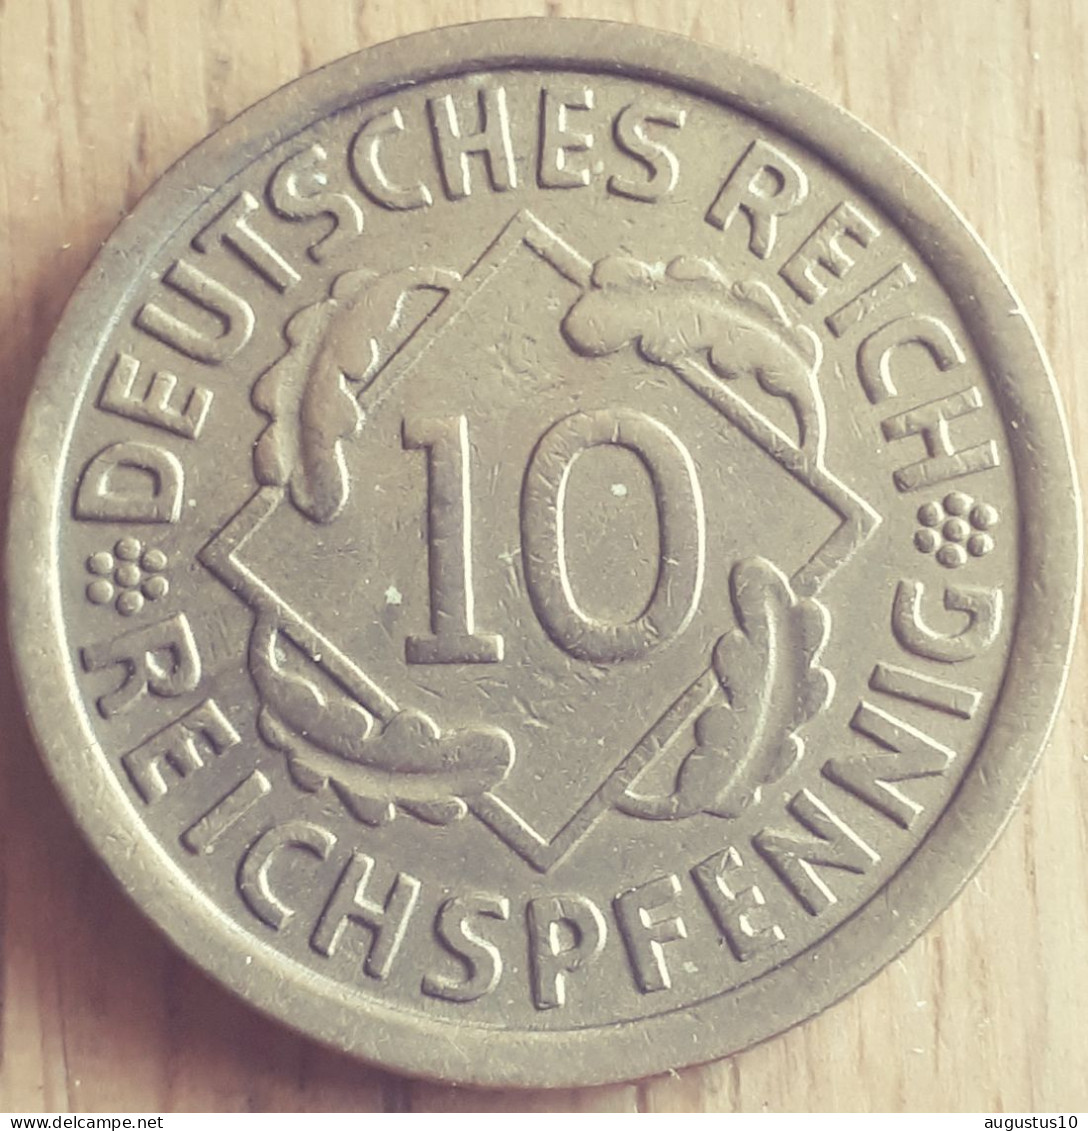 DEUTSCHLAND: 10 REICHSPFENNIG 1929 J KM 40 UNC - 10 Rentenpfennig & 10 Reichspfennig